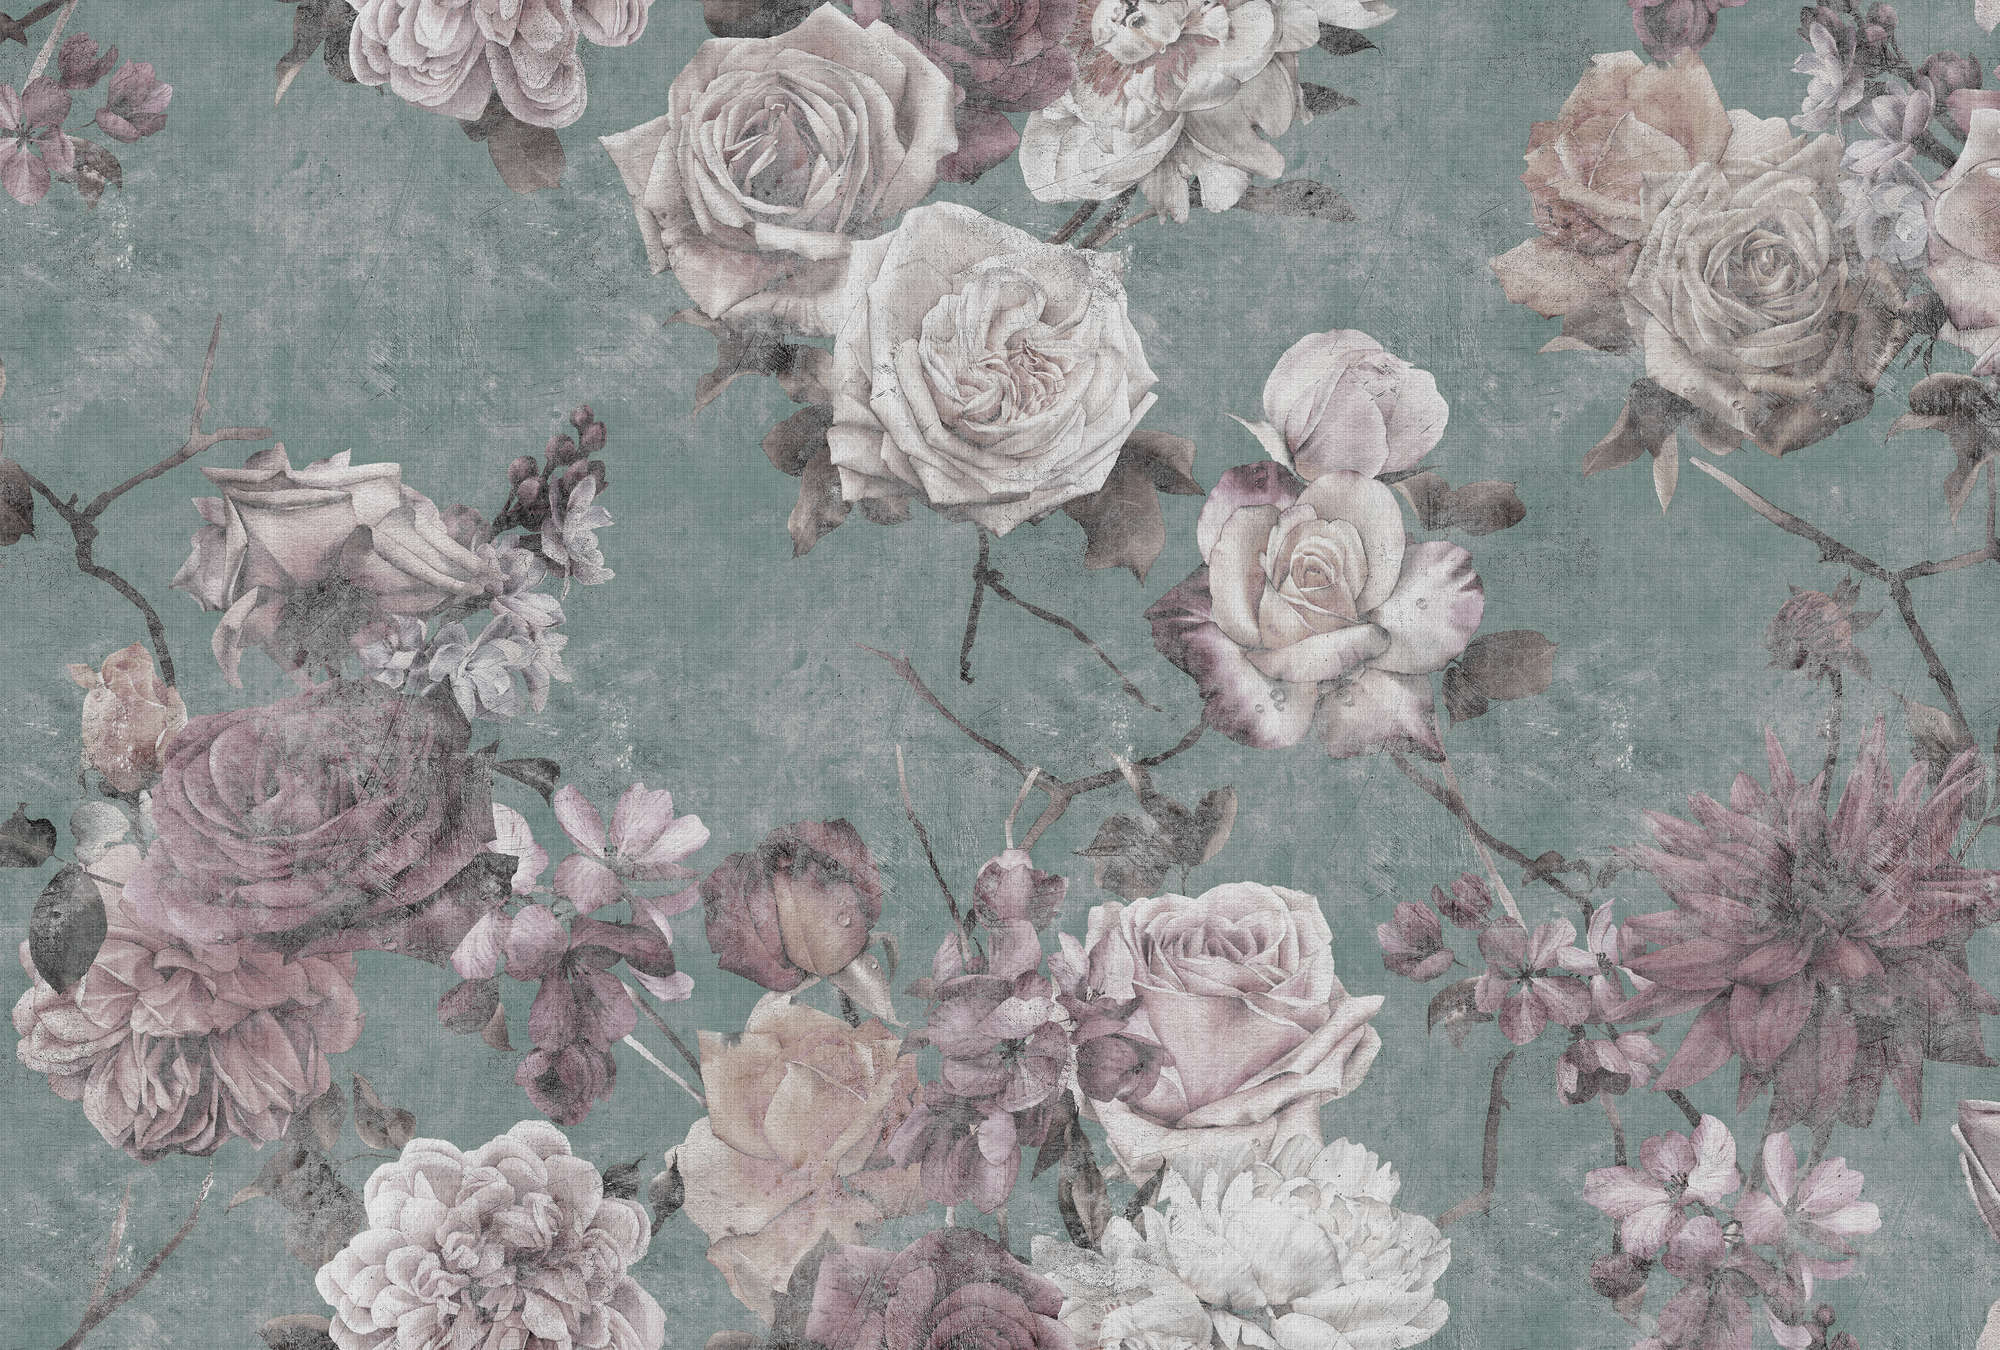             Sleeping Beauty 2 - Onderlaag behang Rozenbloesems in Vintage Stijl - Natuurlijke Linnen Textuur - Roze, Turquoise | Textuur Niet-geweven
        